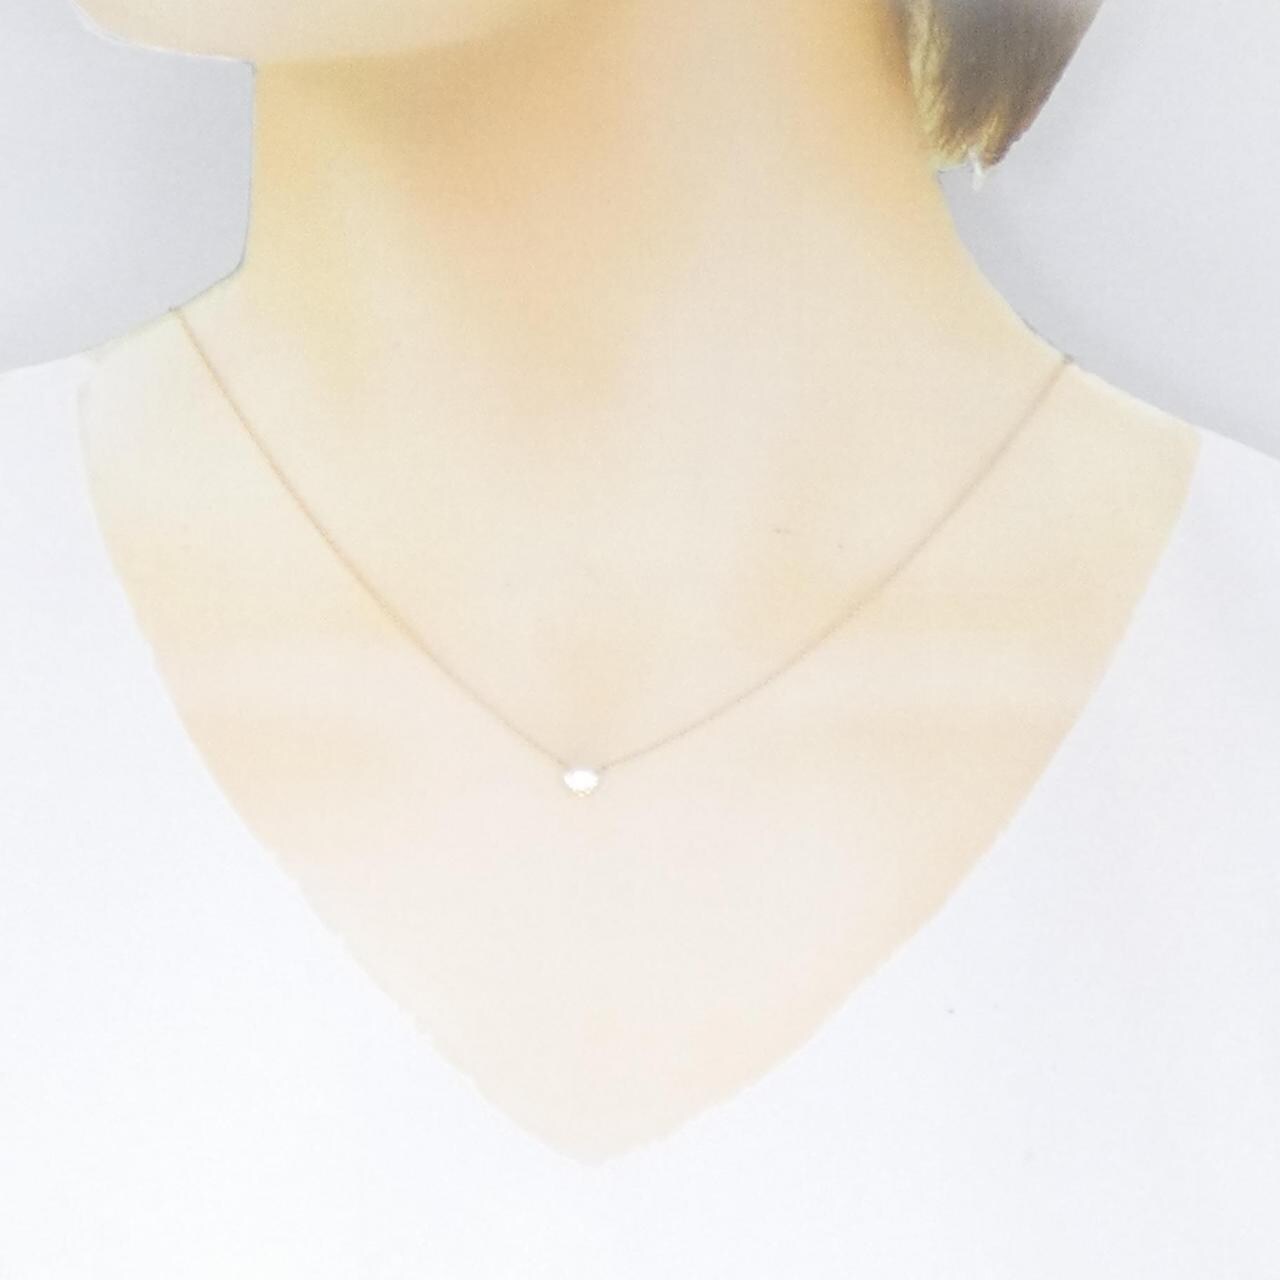 [Remake] K18YG Diamond Necklace 0.325CT G VS2 Heart Shape